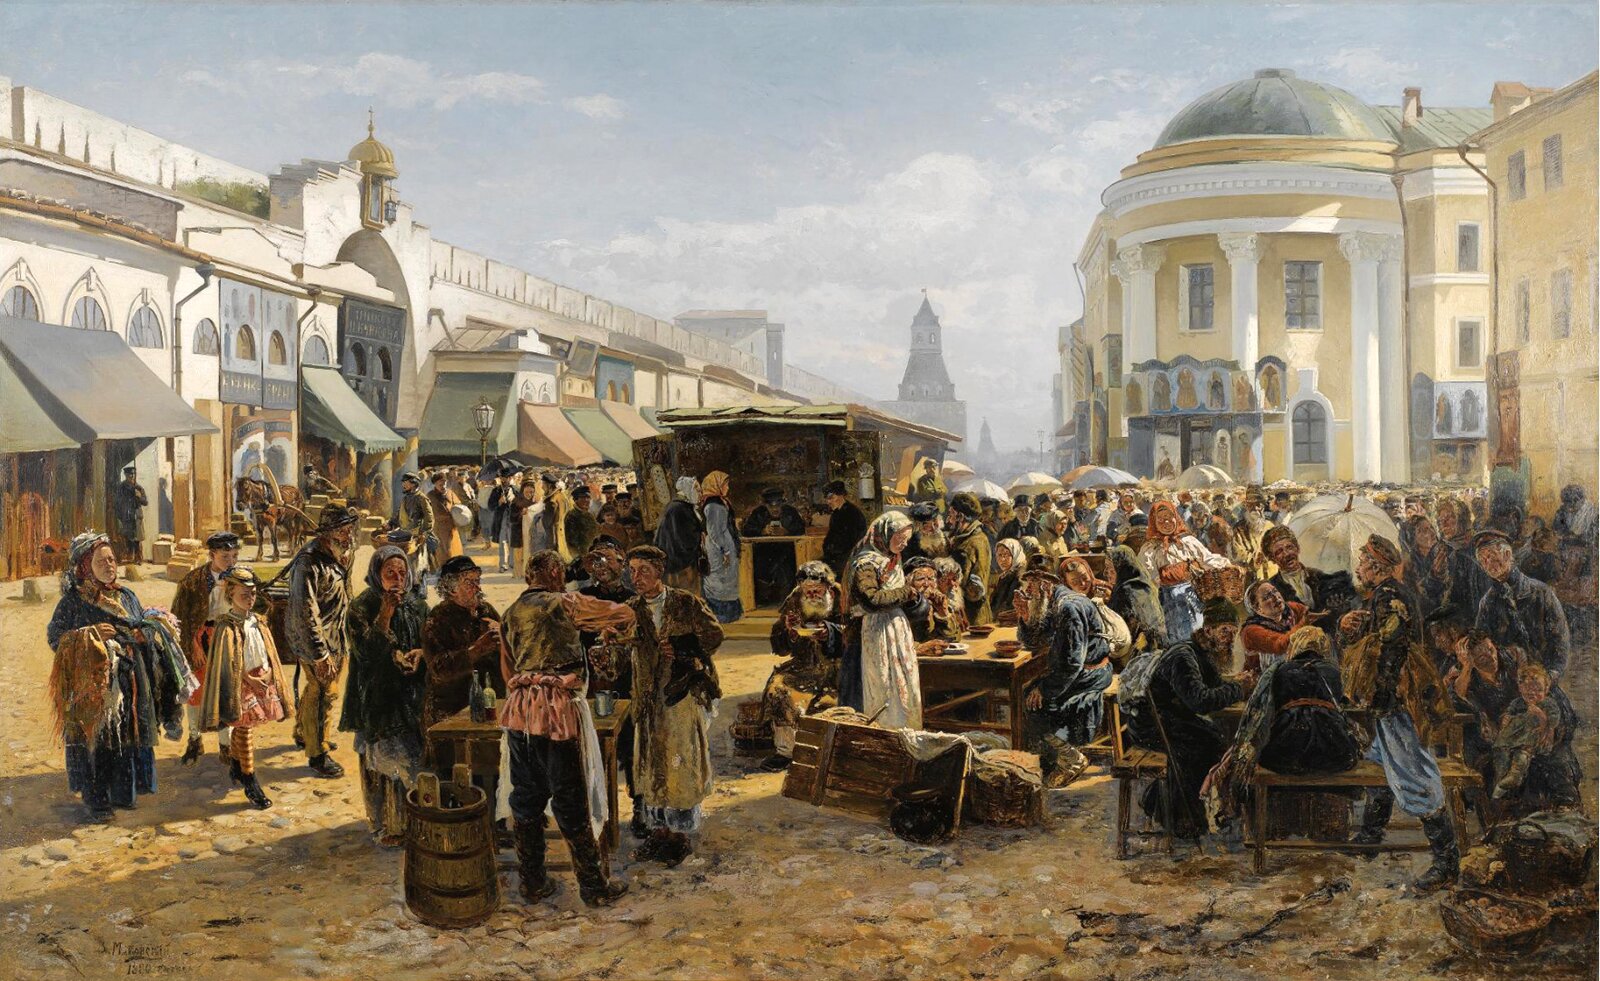 Маковский толкучий рынок в Москве